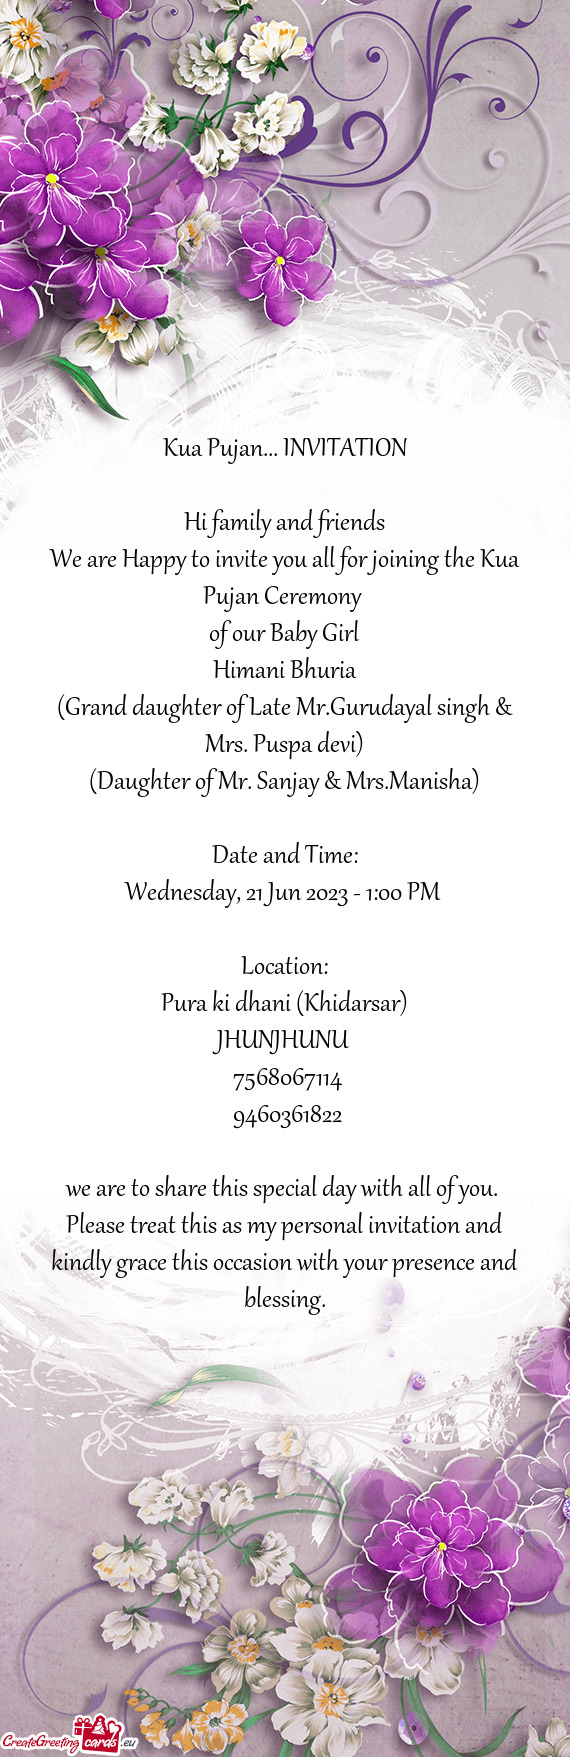 (Grand daughter of Late Mr.Gurudayal singh & Mrs. Puspa devi)